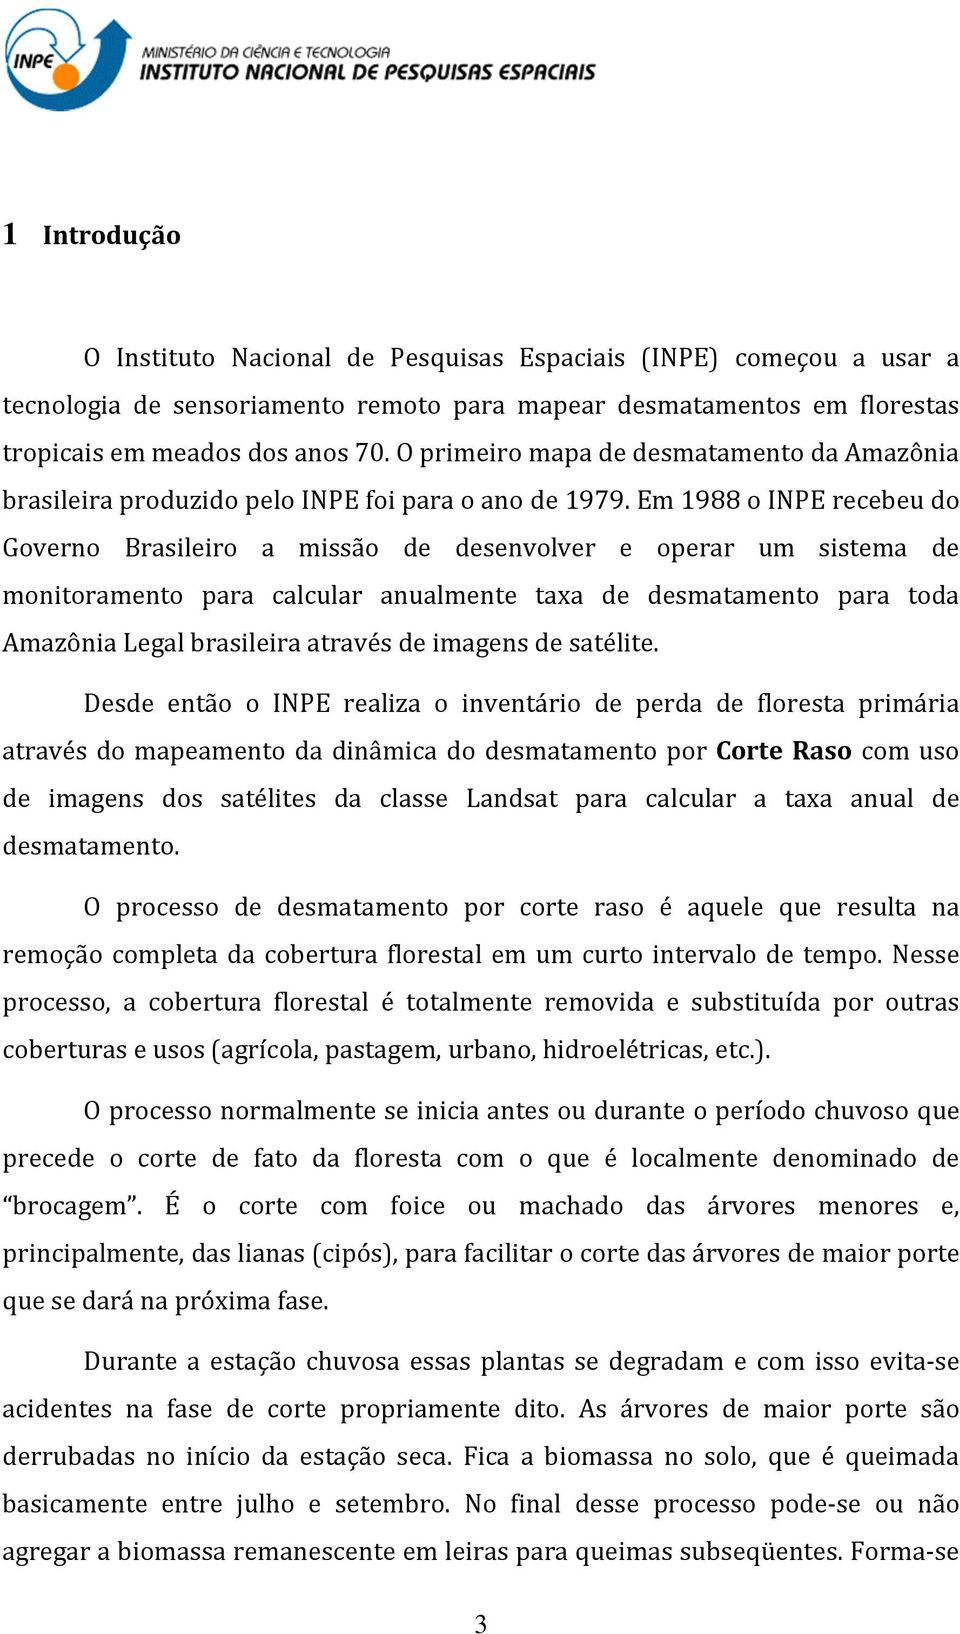 Em 1988 o INPE recebeu do Governo Brasileiro a missão de desenvolver e operar um sistema de monitoramento para calcular anualmente taxa de desmatamento para toda Amazônia Legal brasileira através de